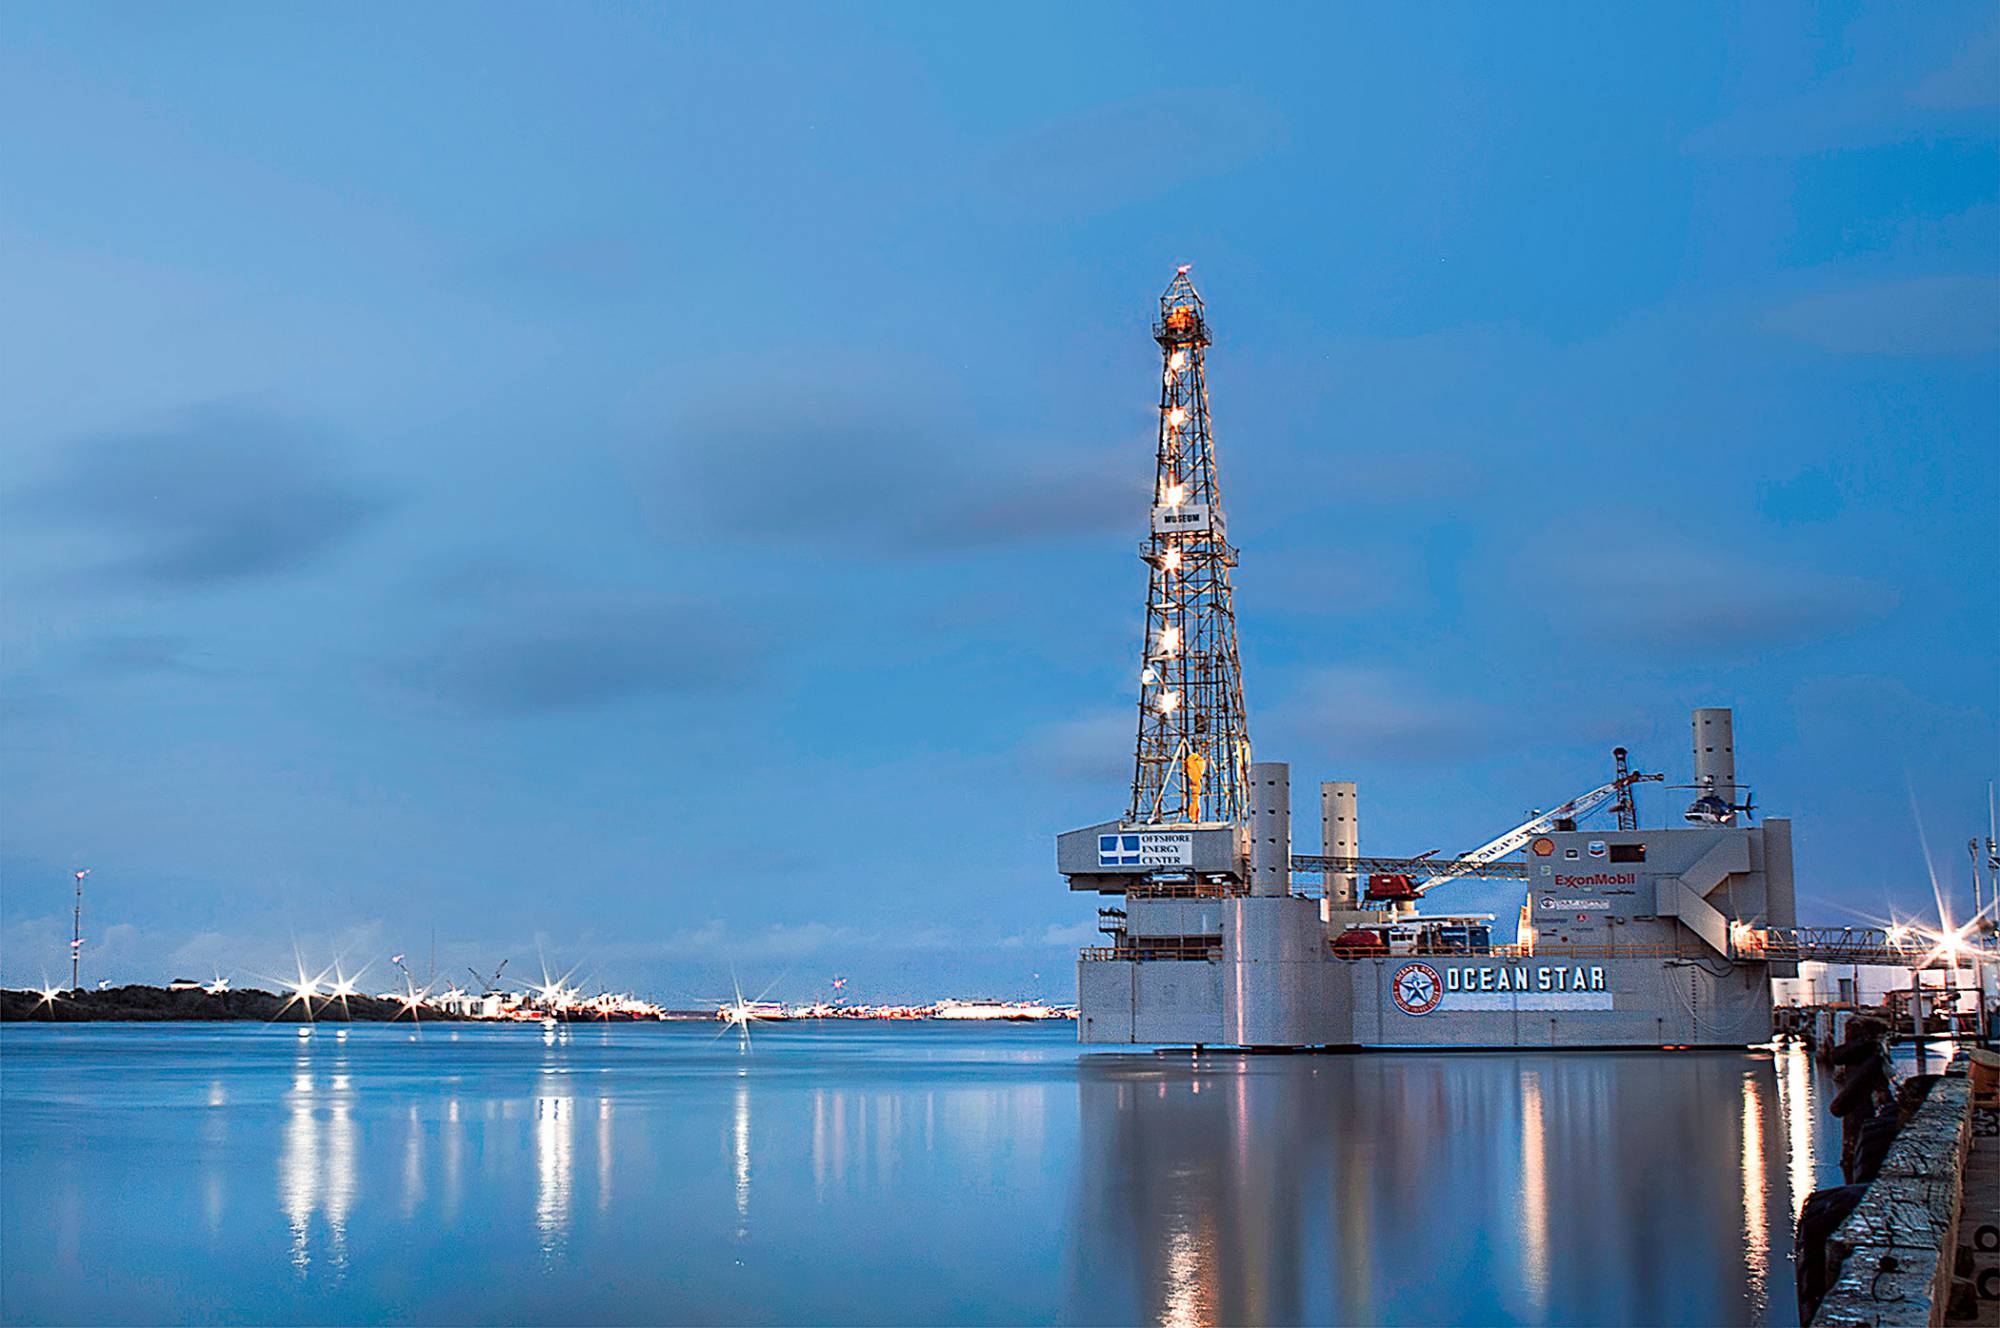 Ocean Star Drilling Platform in Galveston